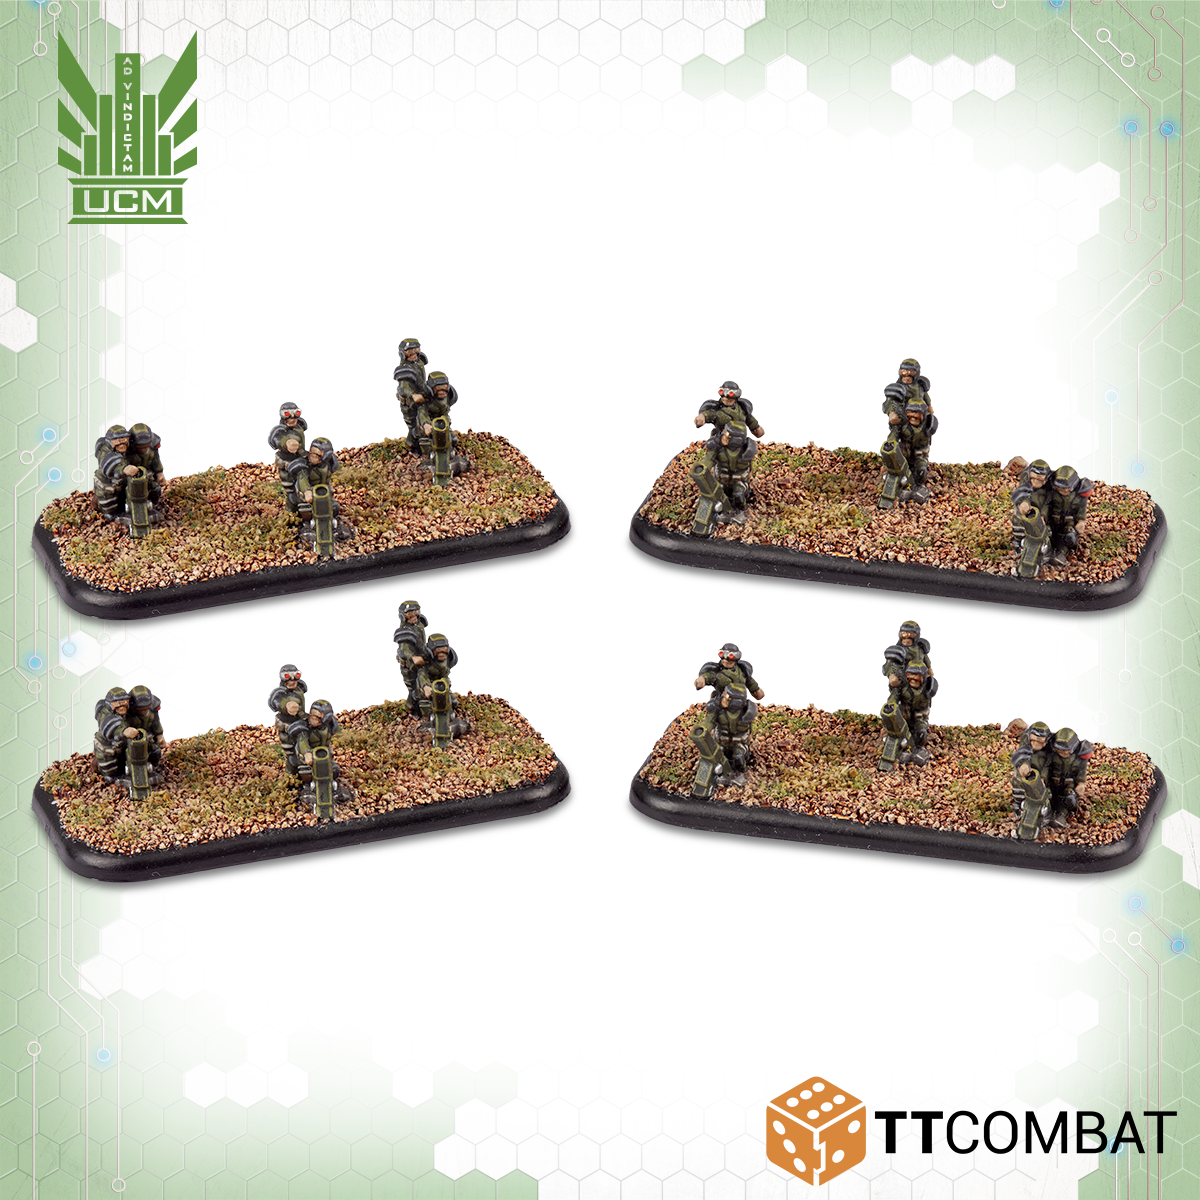 Models of mortar teams